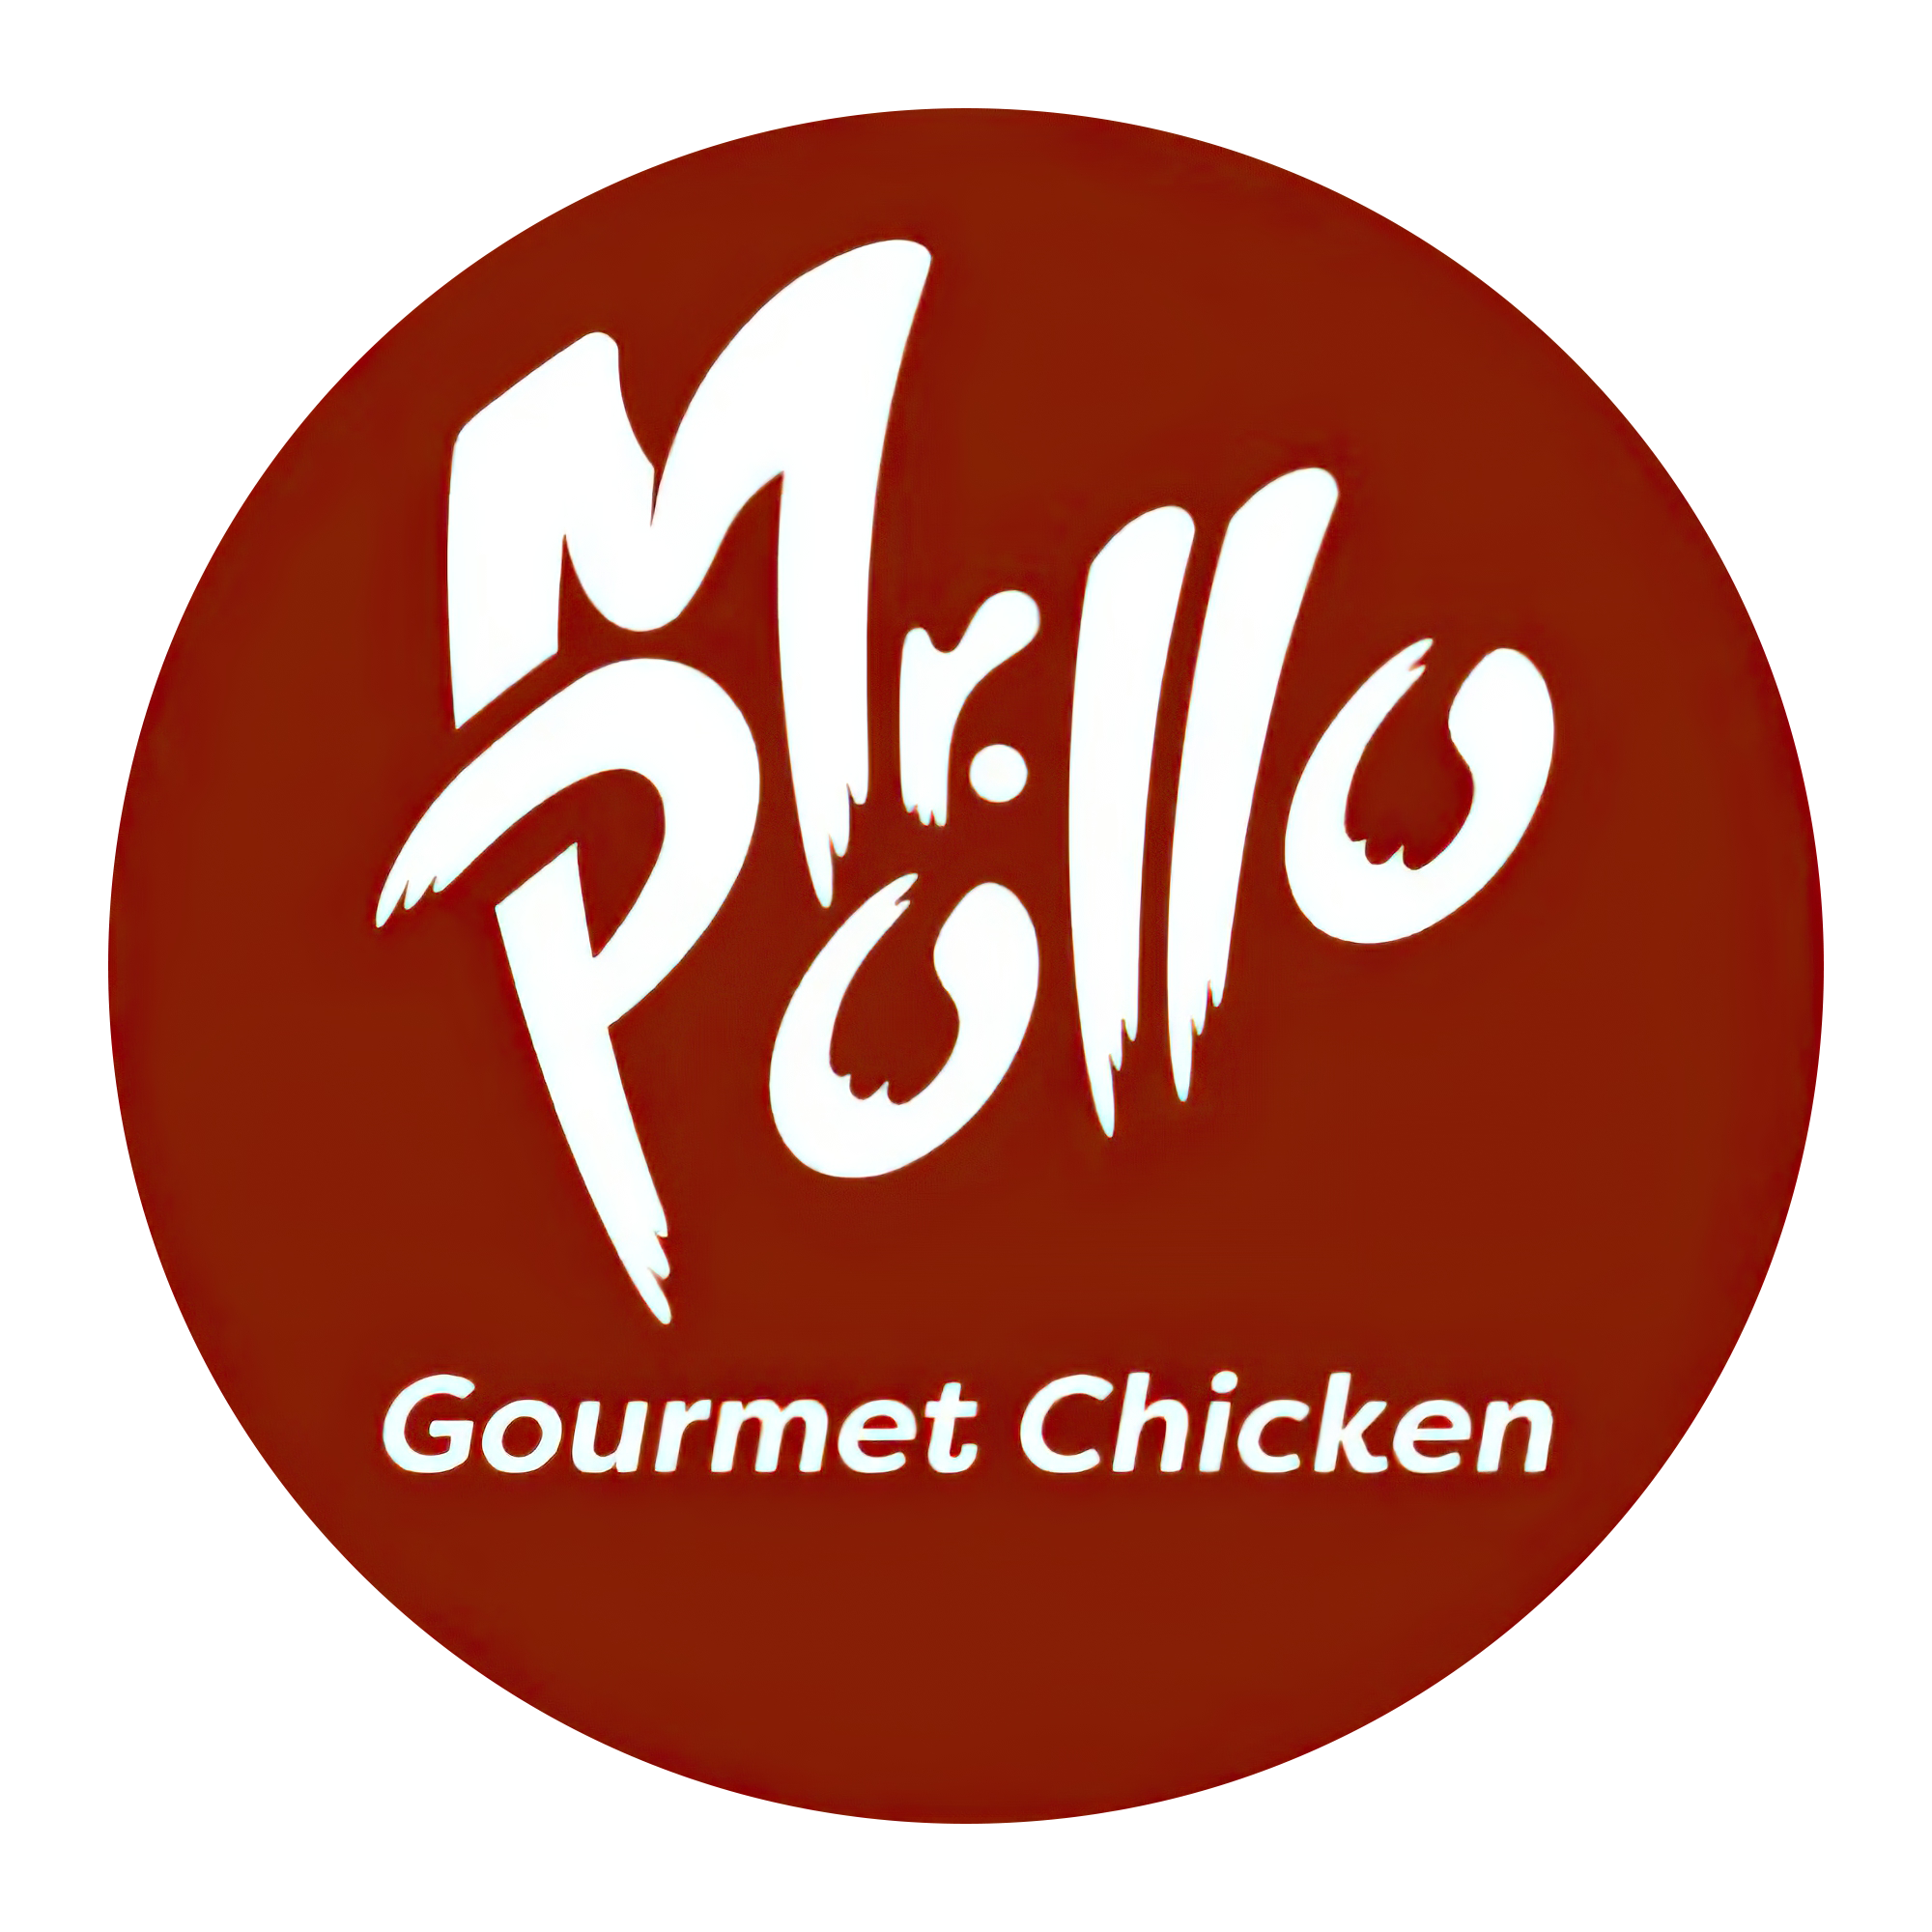 Mr Pollo - Chicken Grill in San Francisco, CA